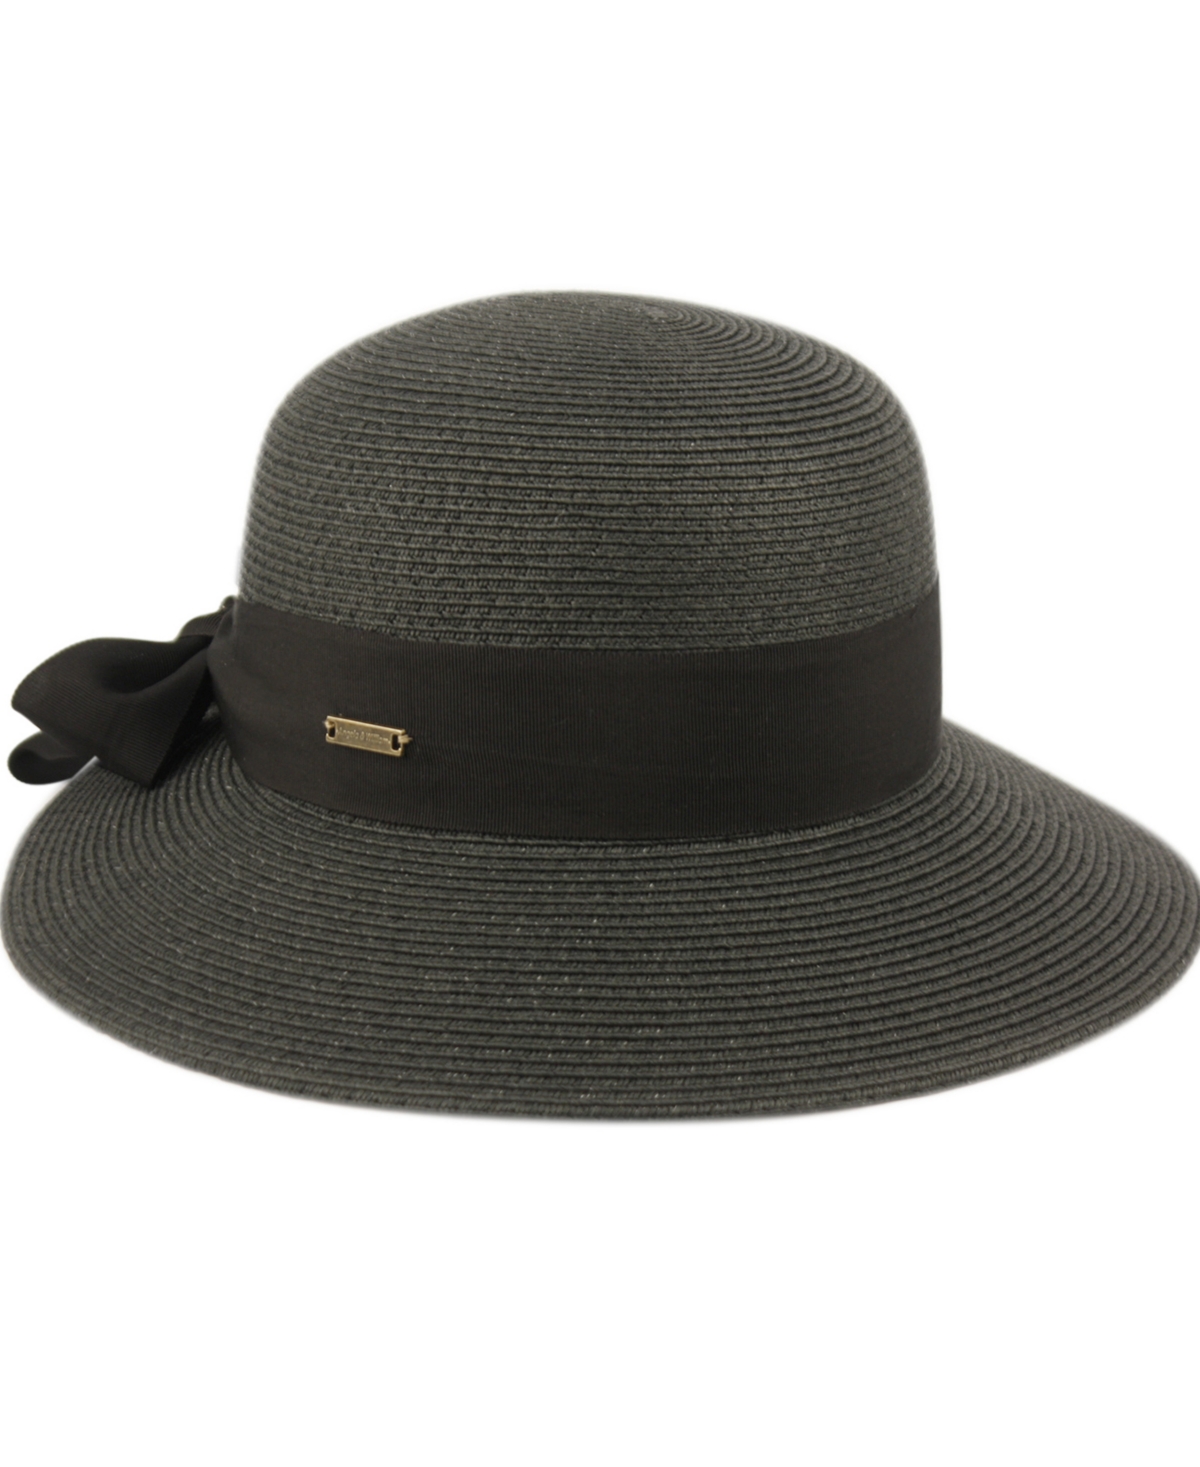 Women's Brimmed Beach Sun Straw Hat - Black